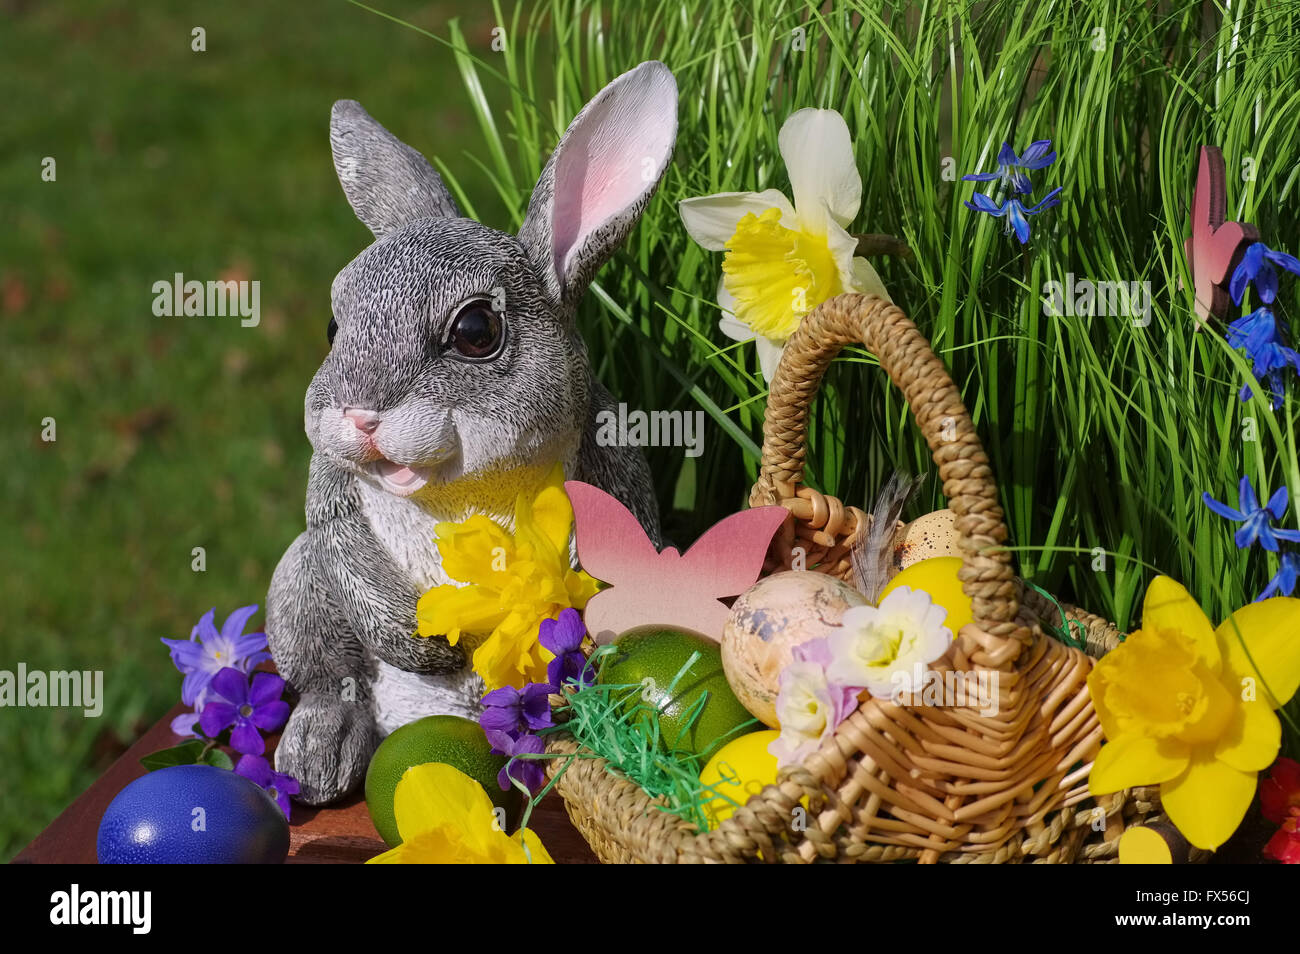 Mit Osterhase Osterkorb und Ostereiern - Conejo de Pascua con el canasto y huevos de Pascua Foto de stock